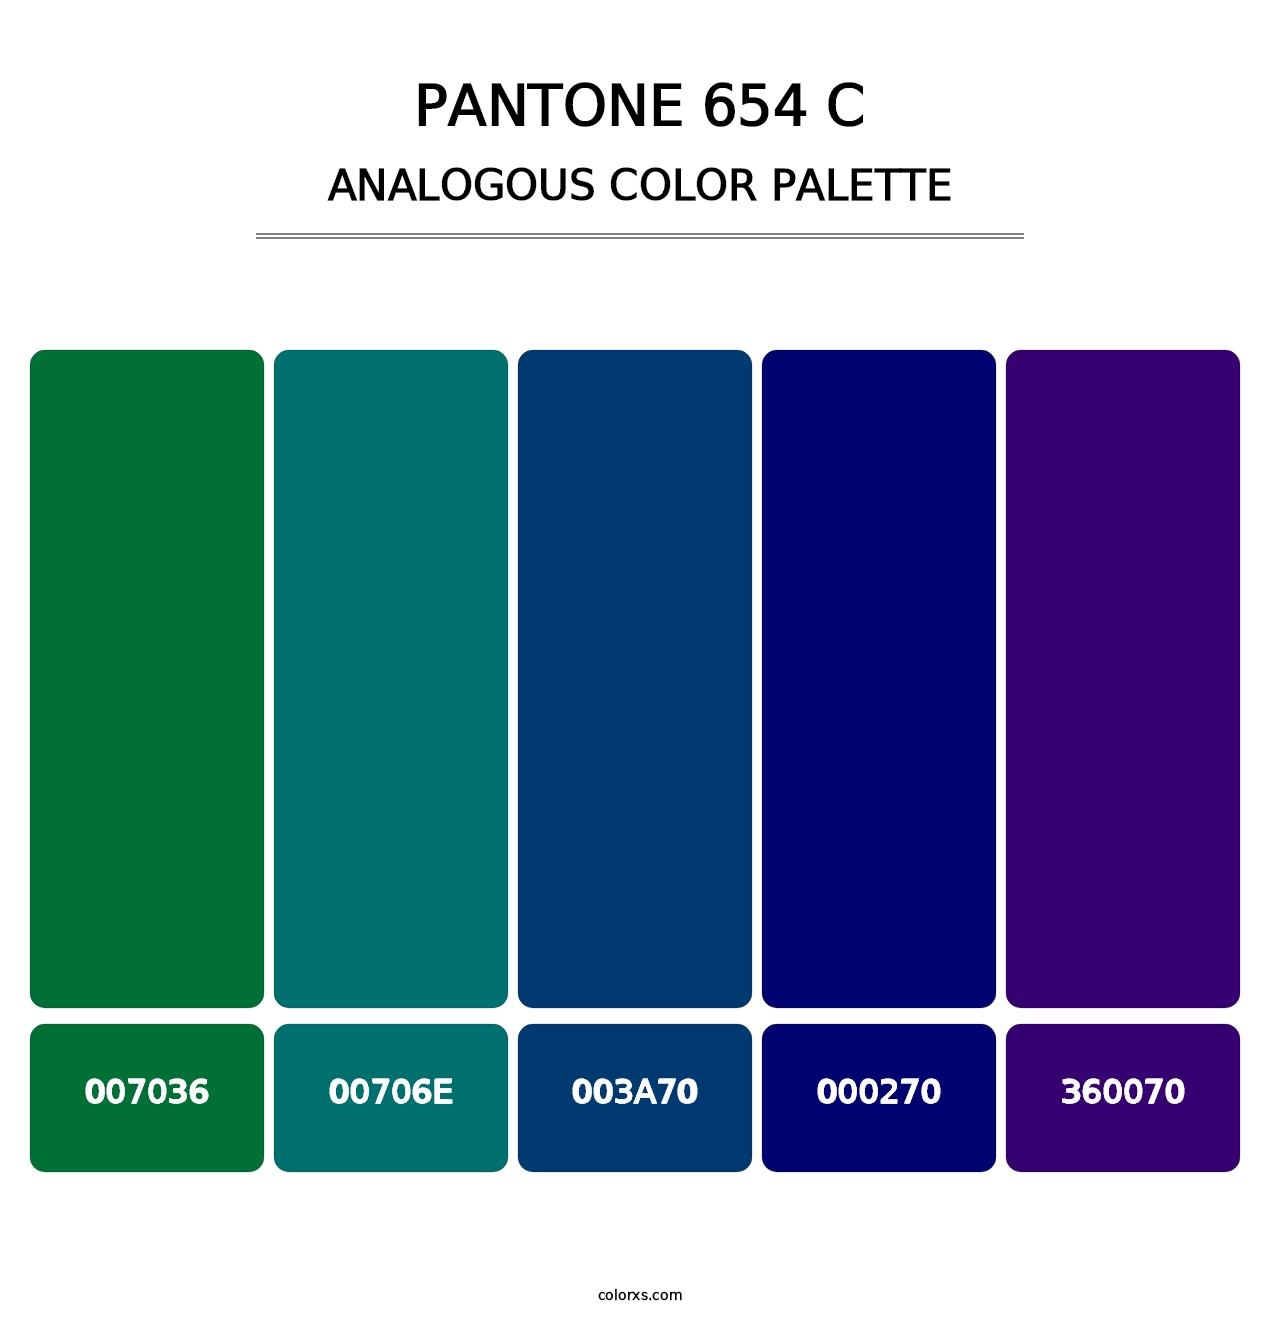 PANTONE 654 C - Analogous Color Palette